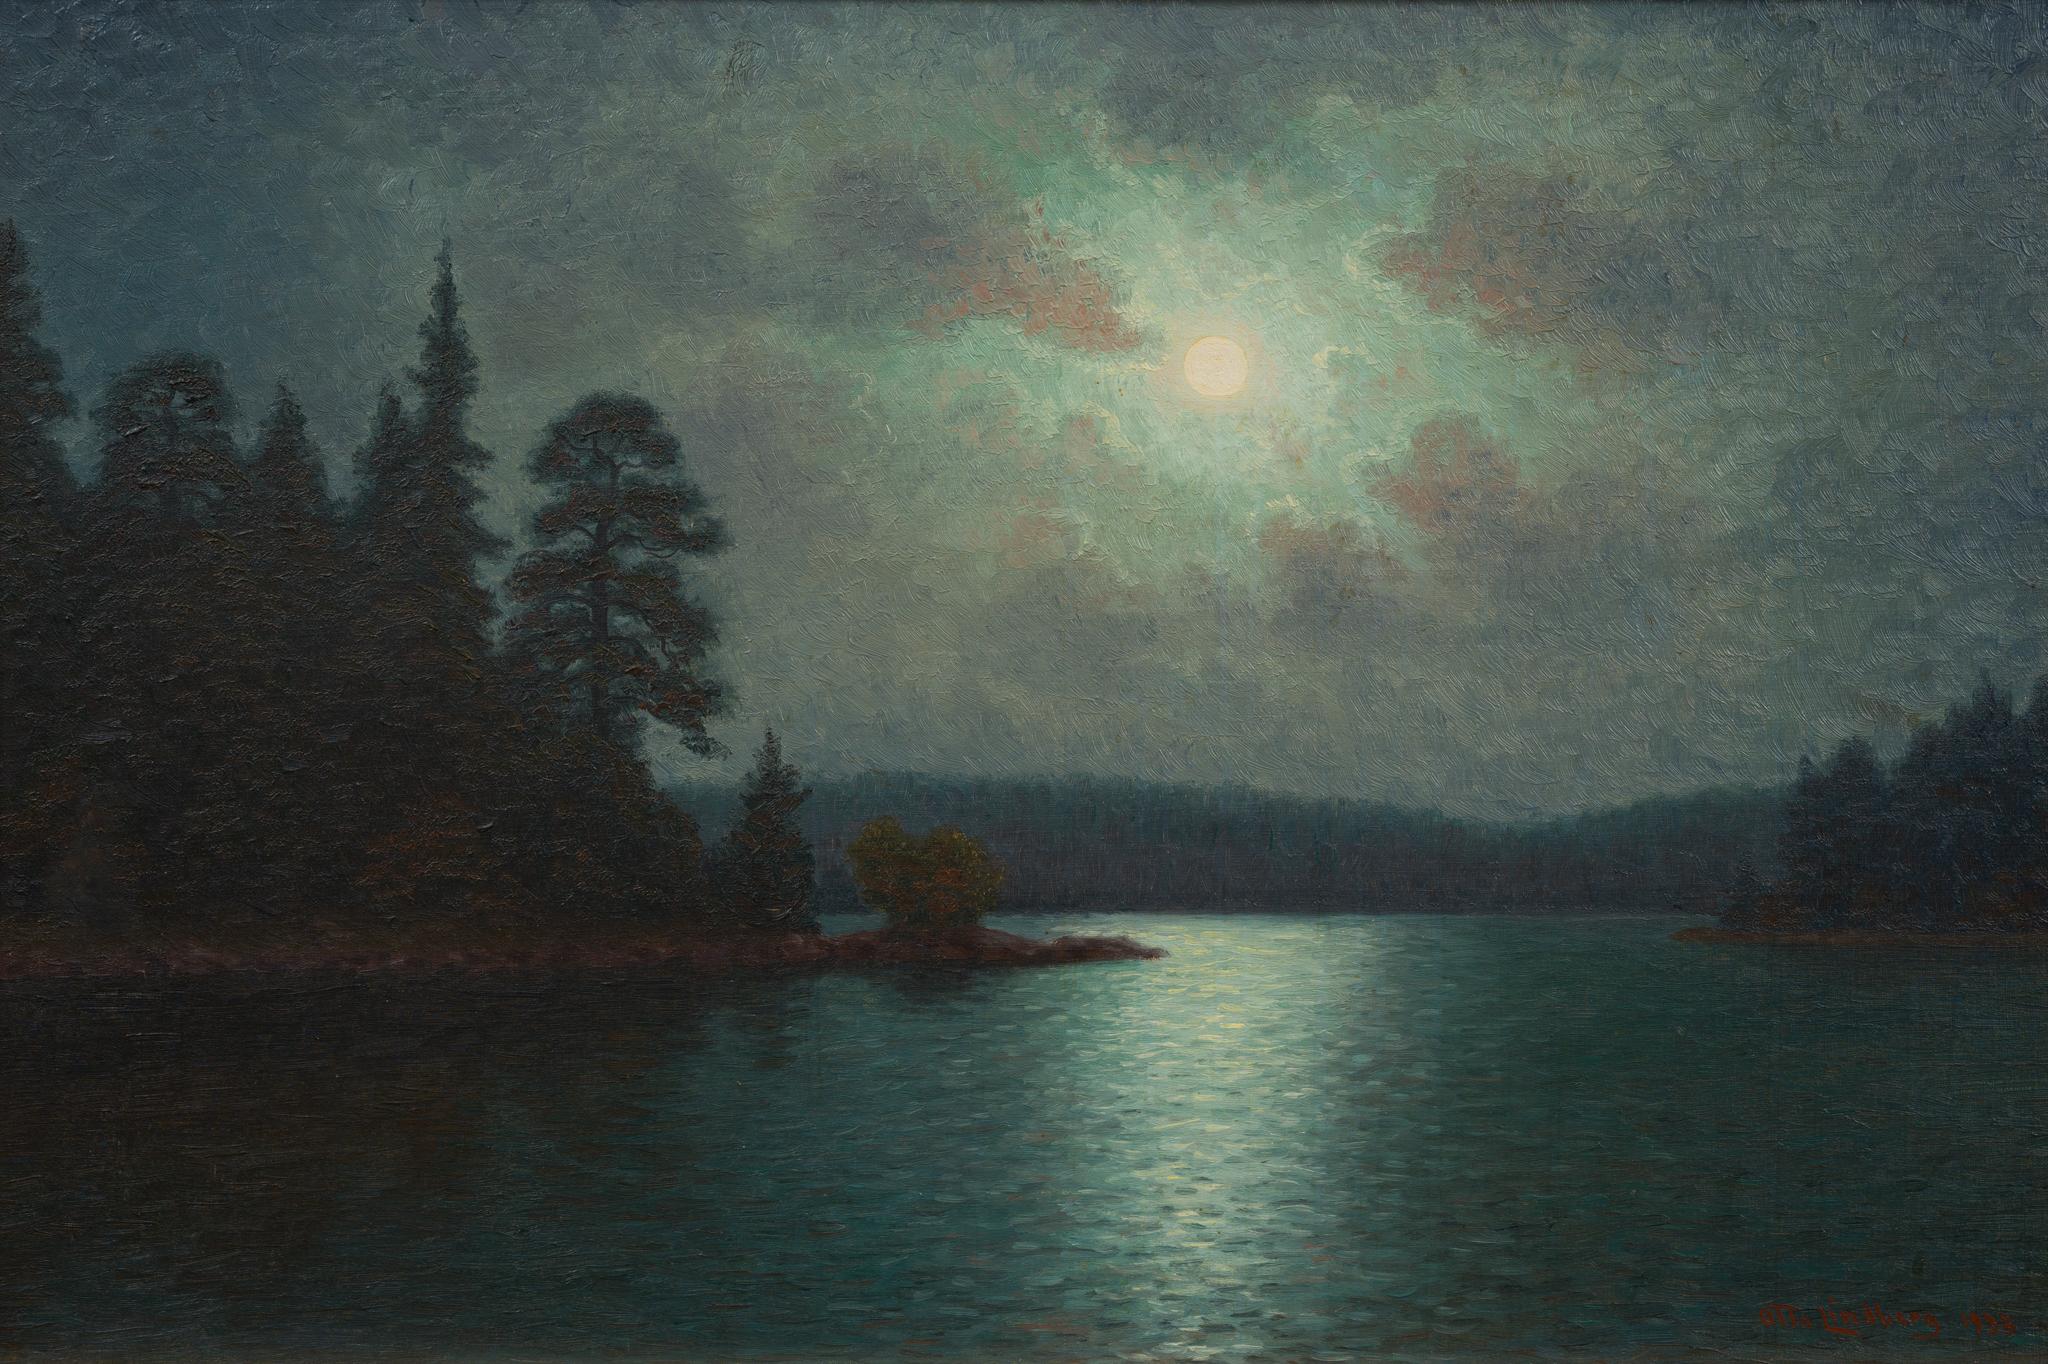 Le clair de lune au-dessus du lac par l'artiste suédois Otto Lindberg, peint en 1933